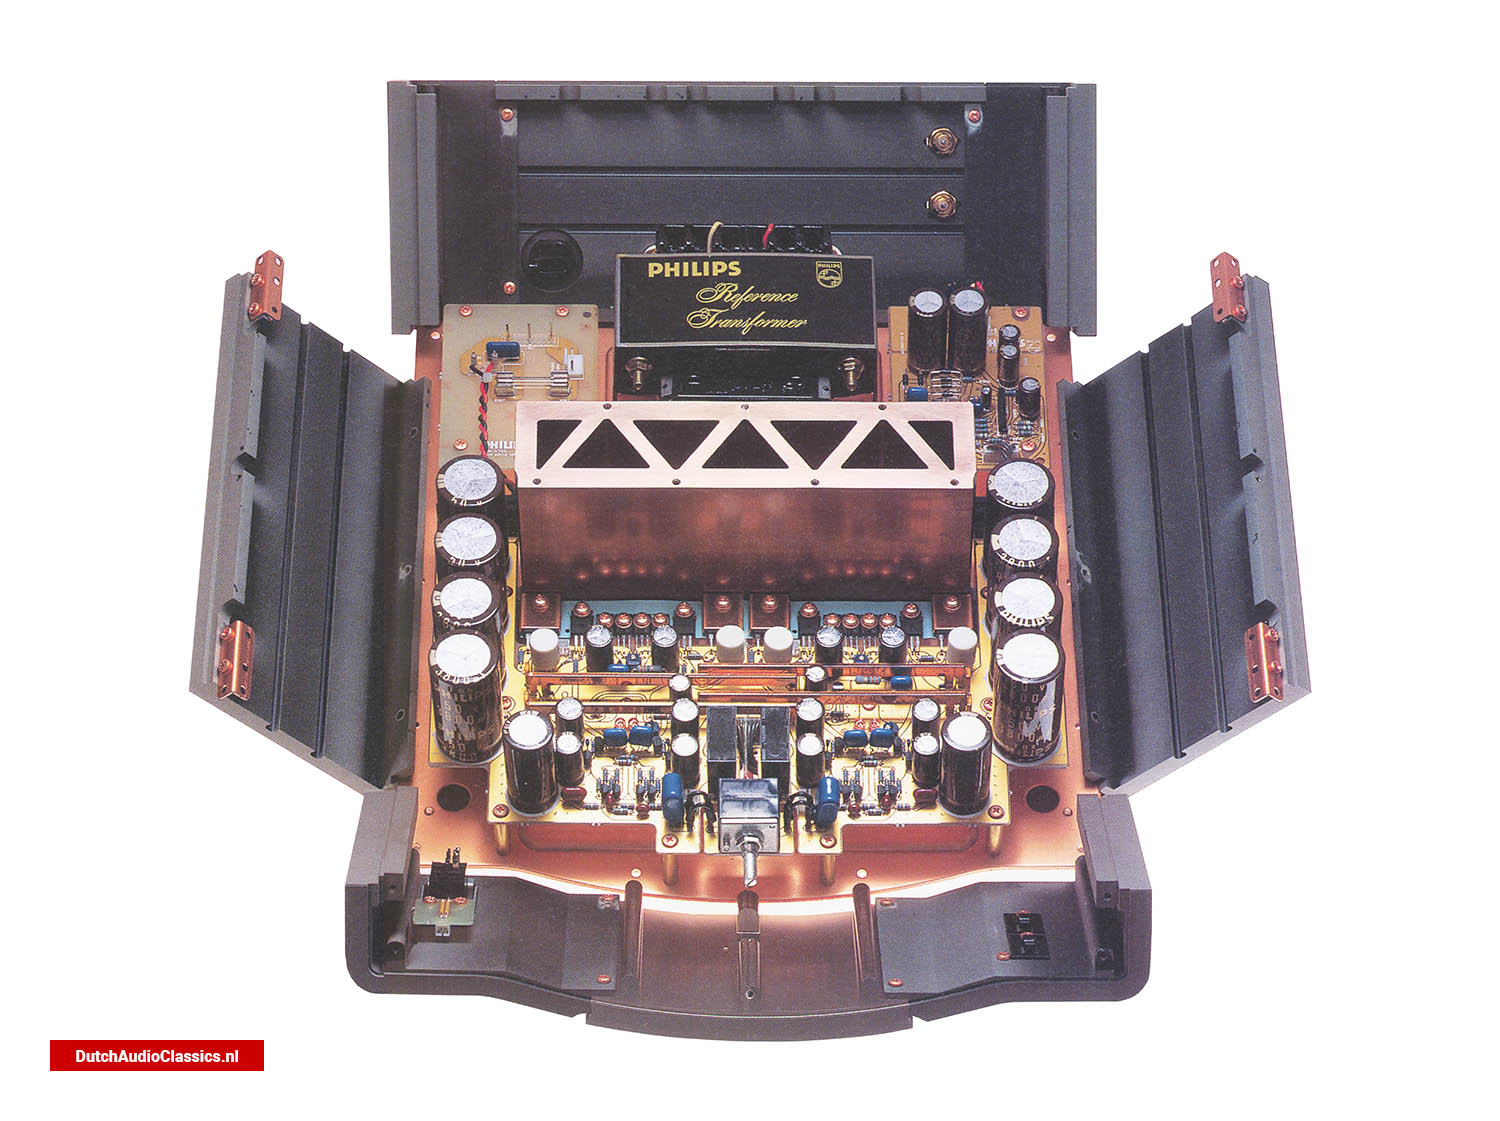 Philips LHH A700 power buffer amplifier